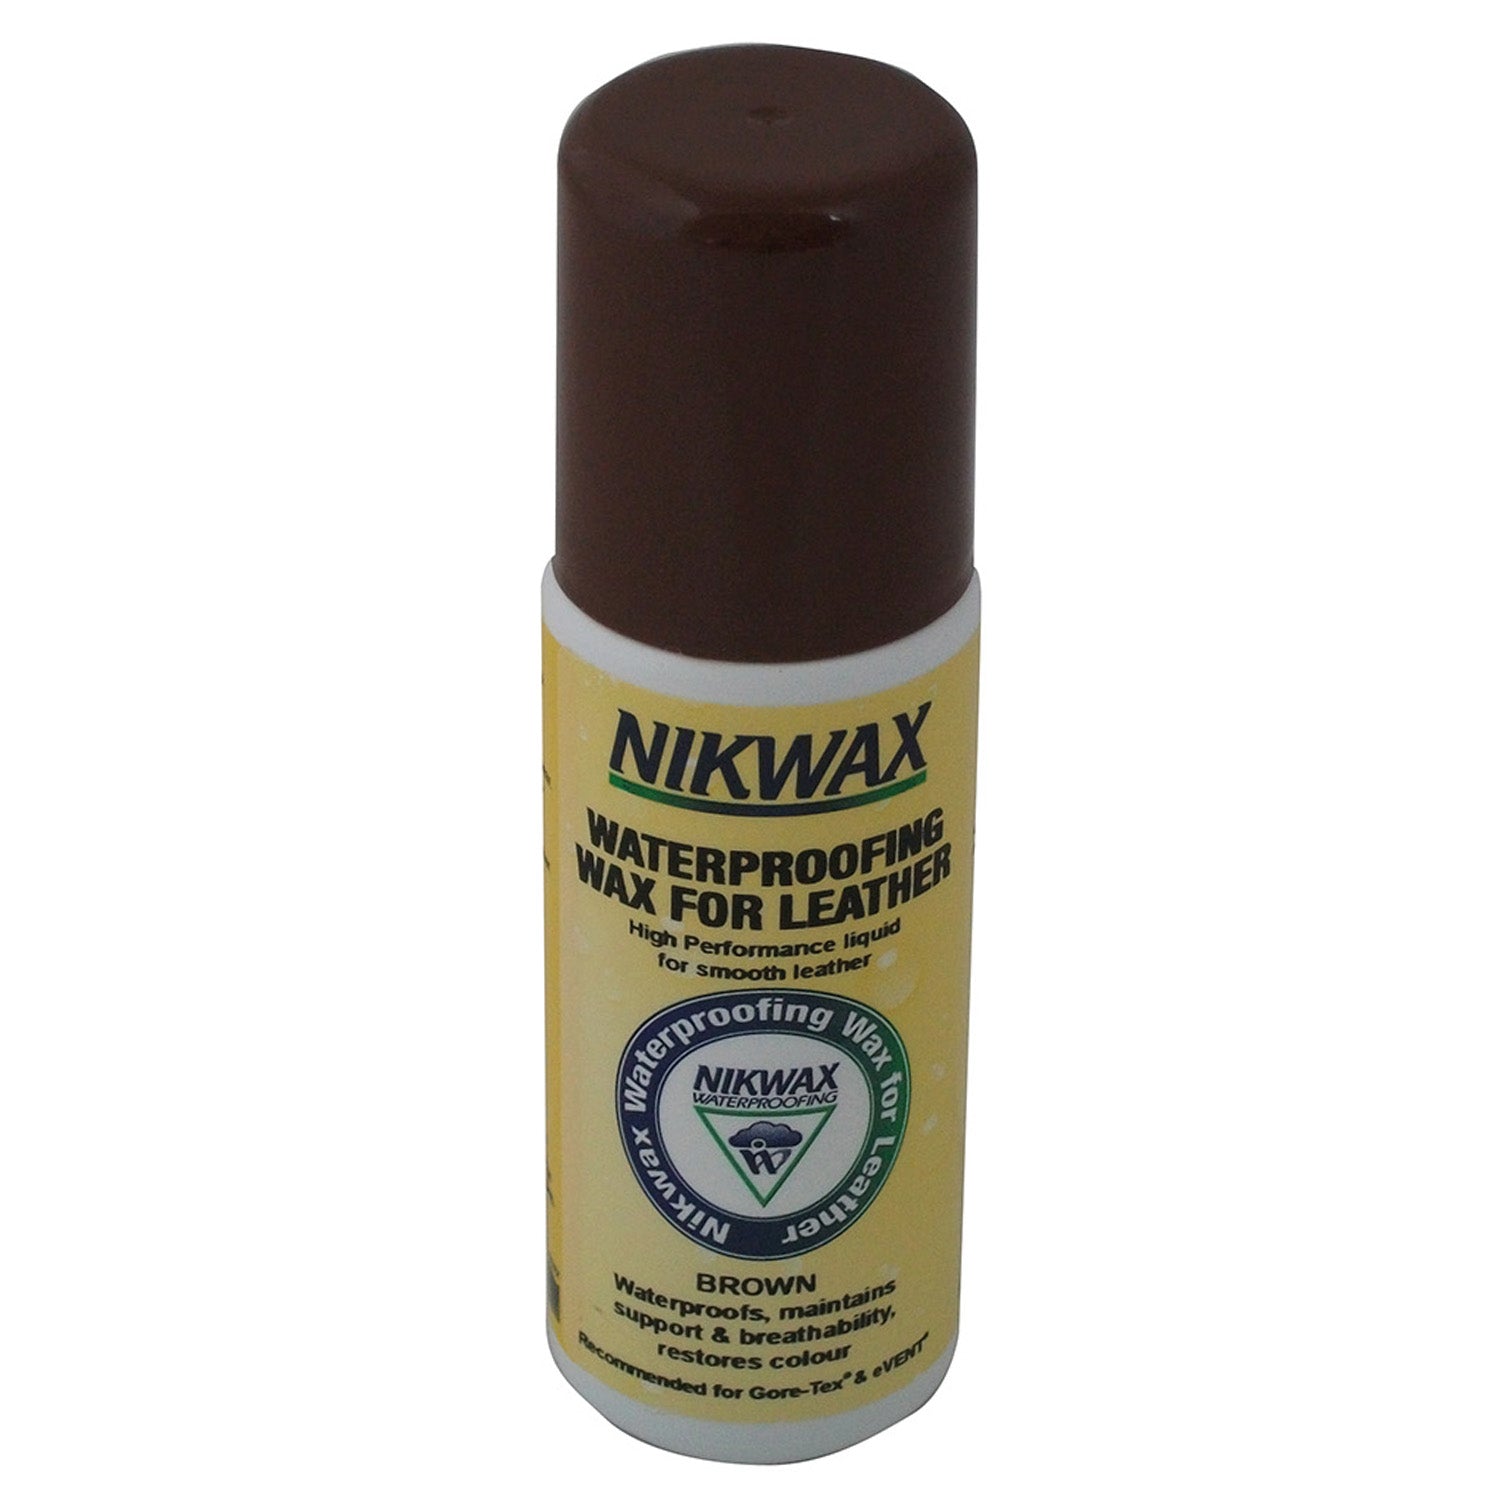 Nikwax Waterproofing Wax For Leather Liquid